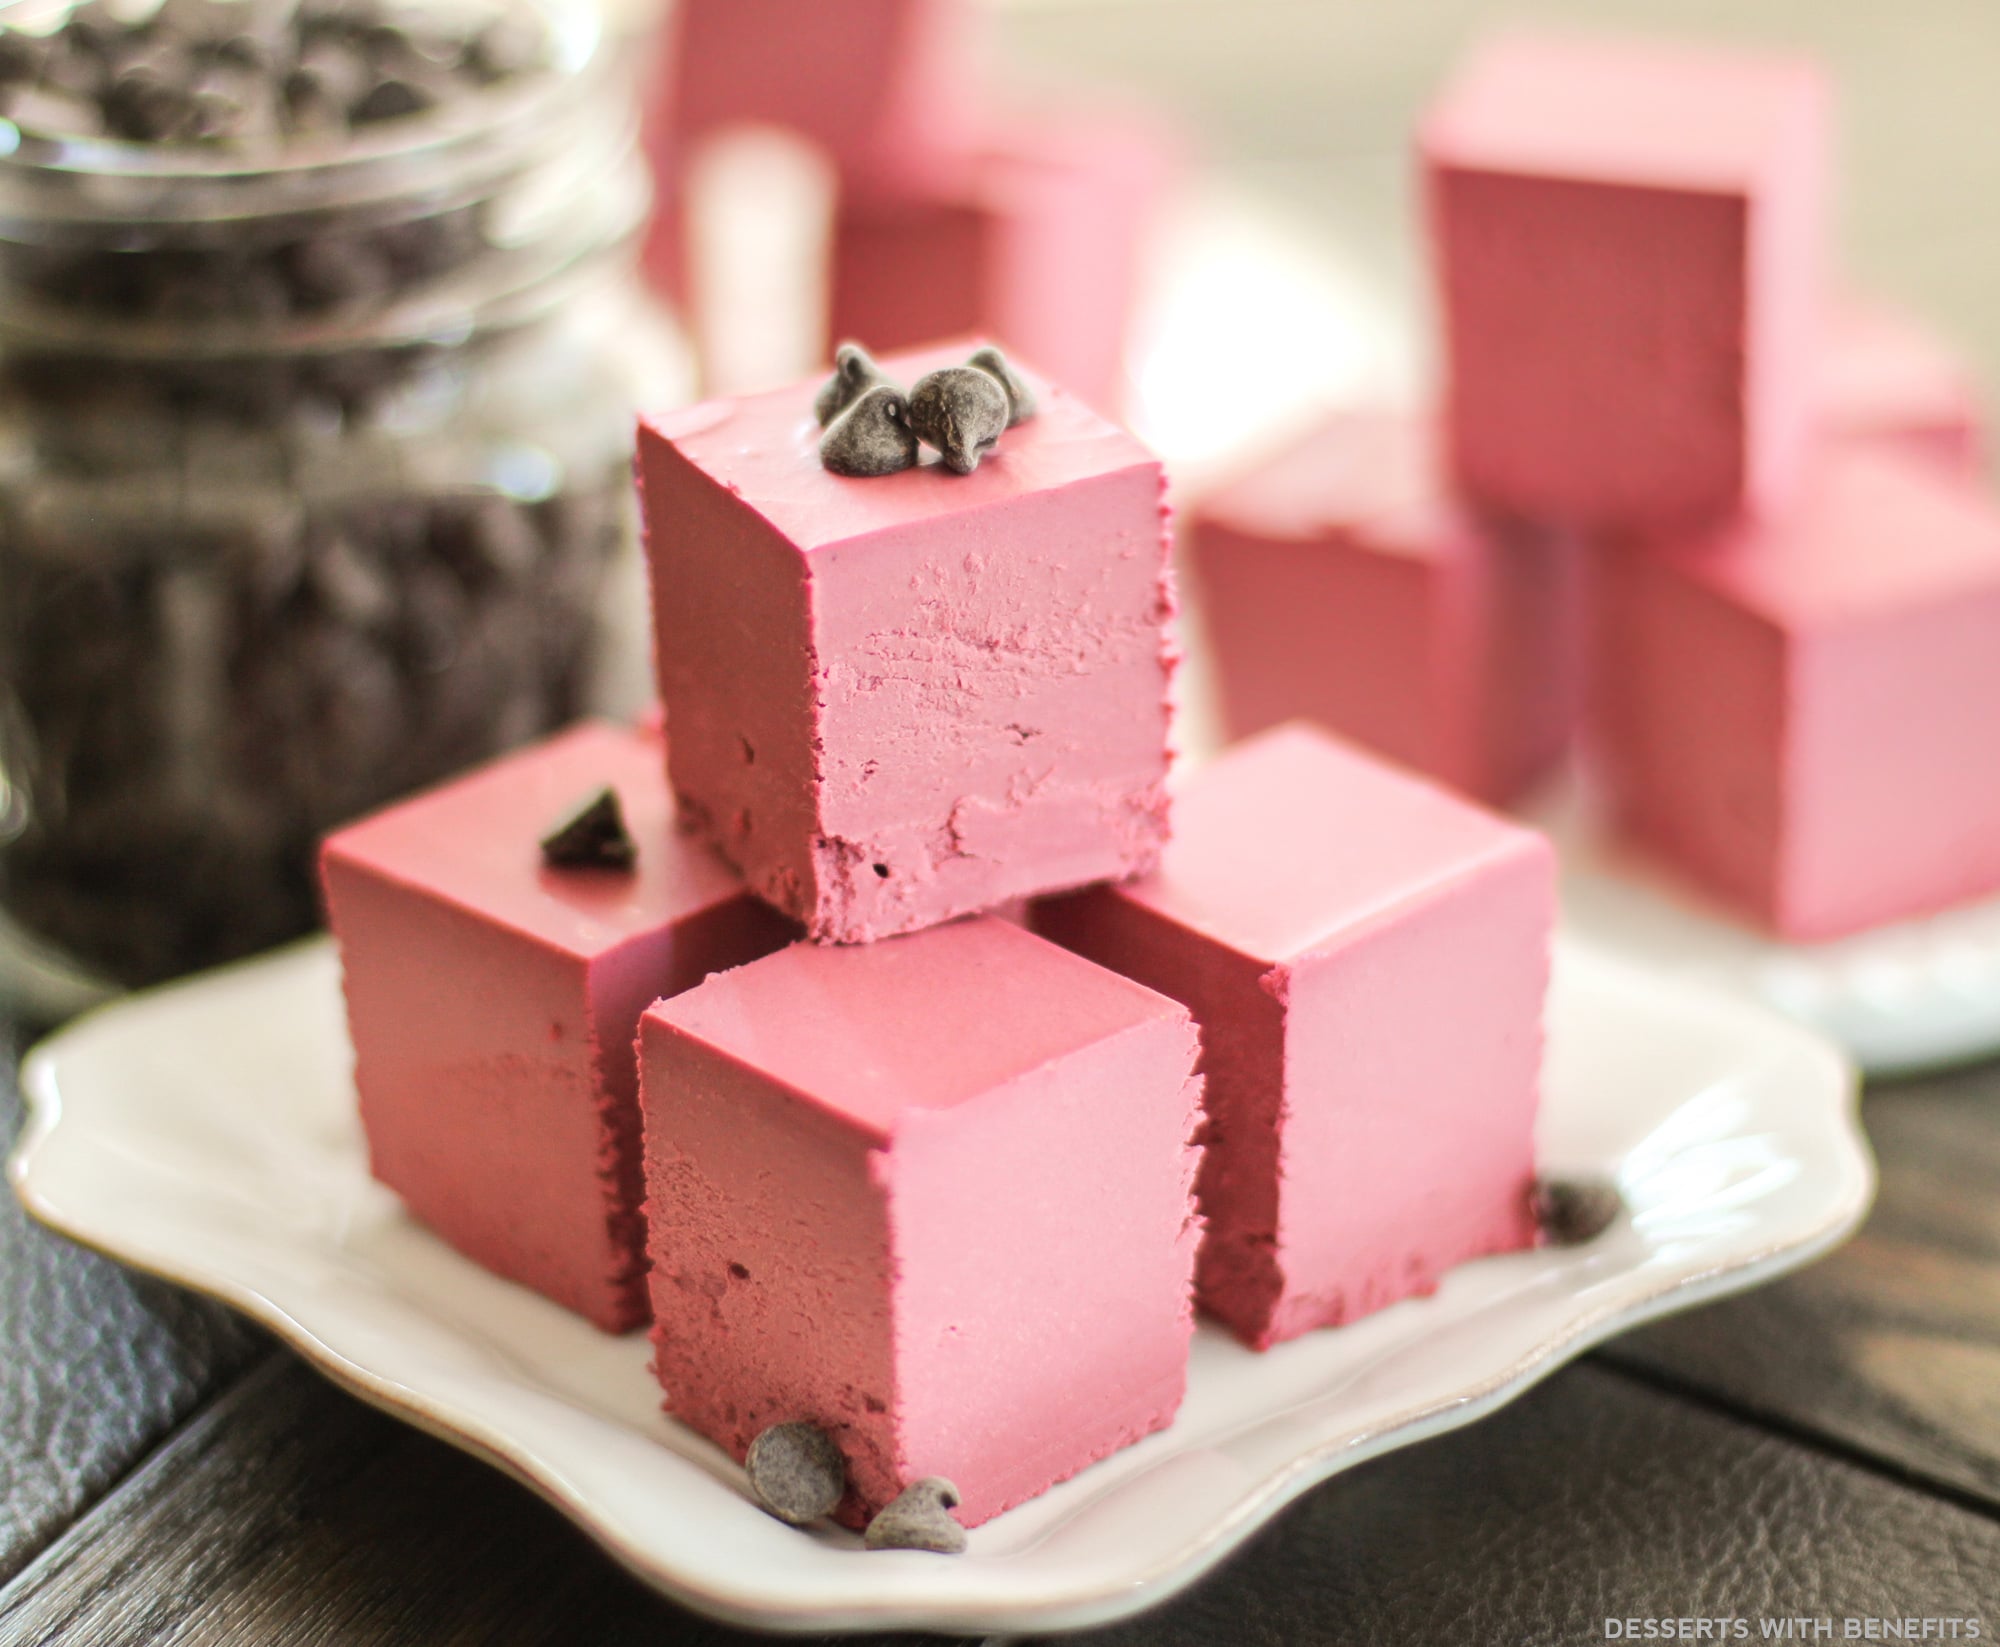 Desserts With Benefits Healthy Raw Red Velvet Fudge (no bake, sugar